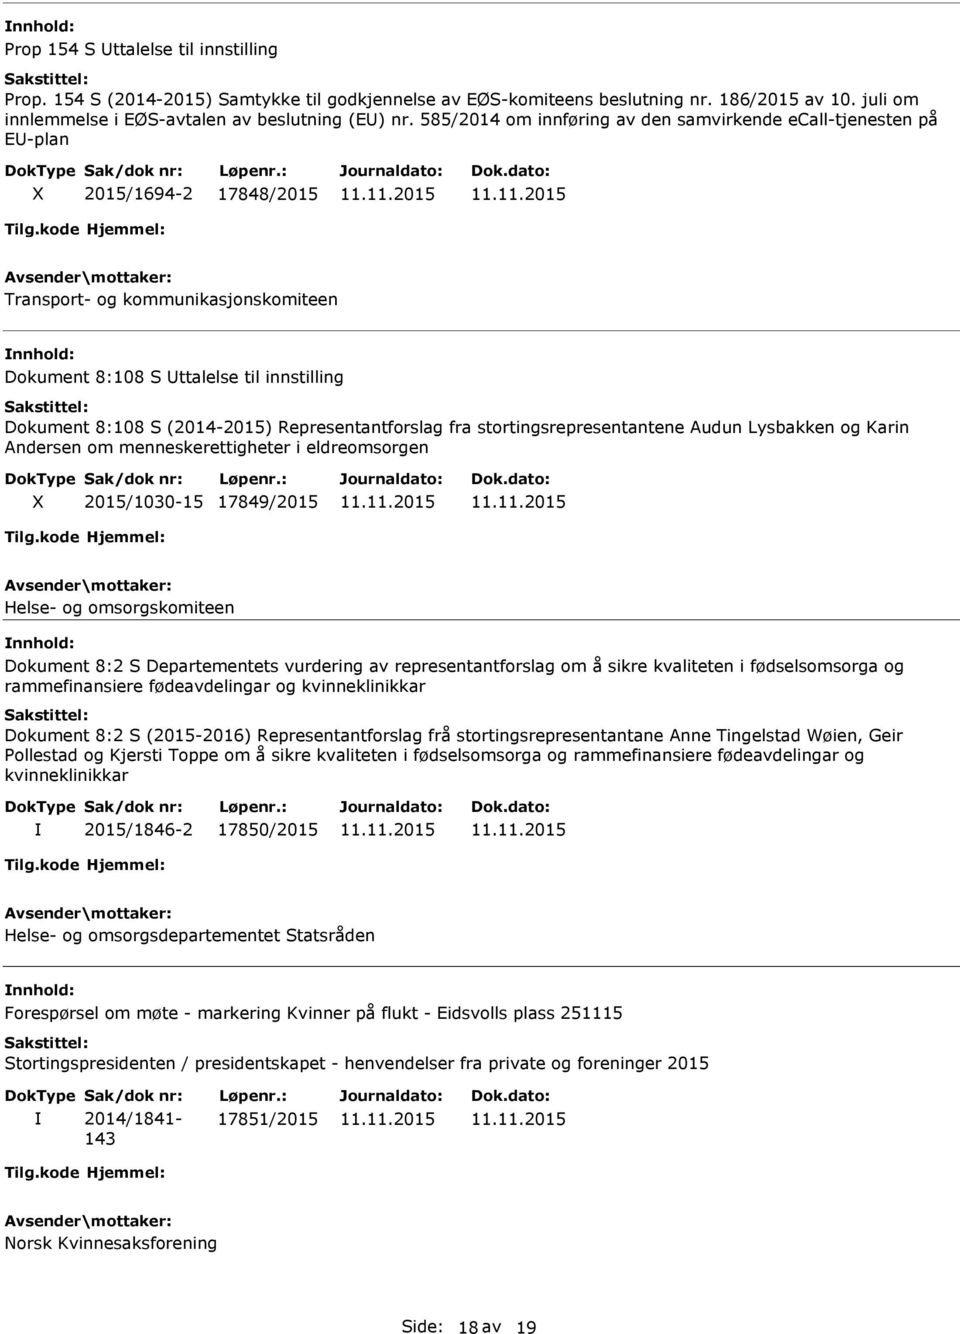 Representantforslag fra stortingsrepresentantene Audun Lysbakken og Karin Andersen om menneskerettigheter i eldreomsorgen 2015/1030-15 17849/2015 Helse- og omsorgskomiteen Dokument 8:2 S